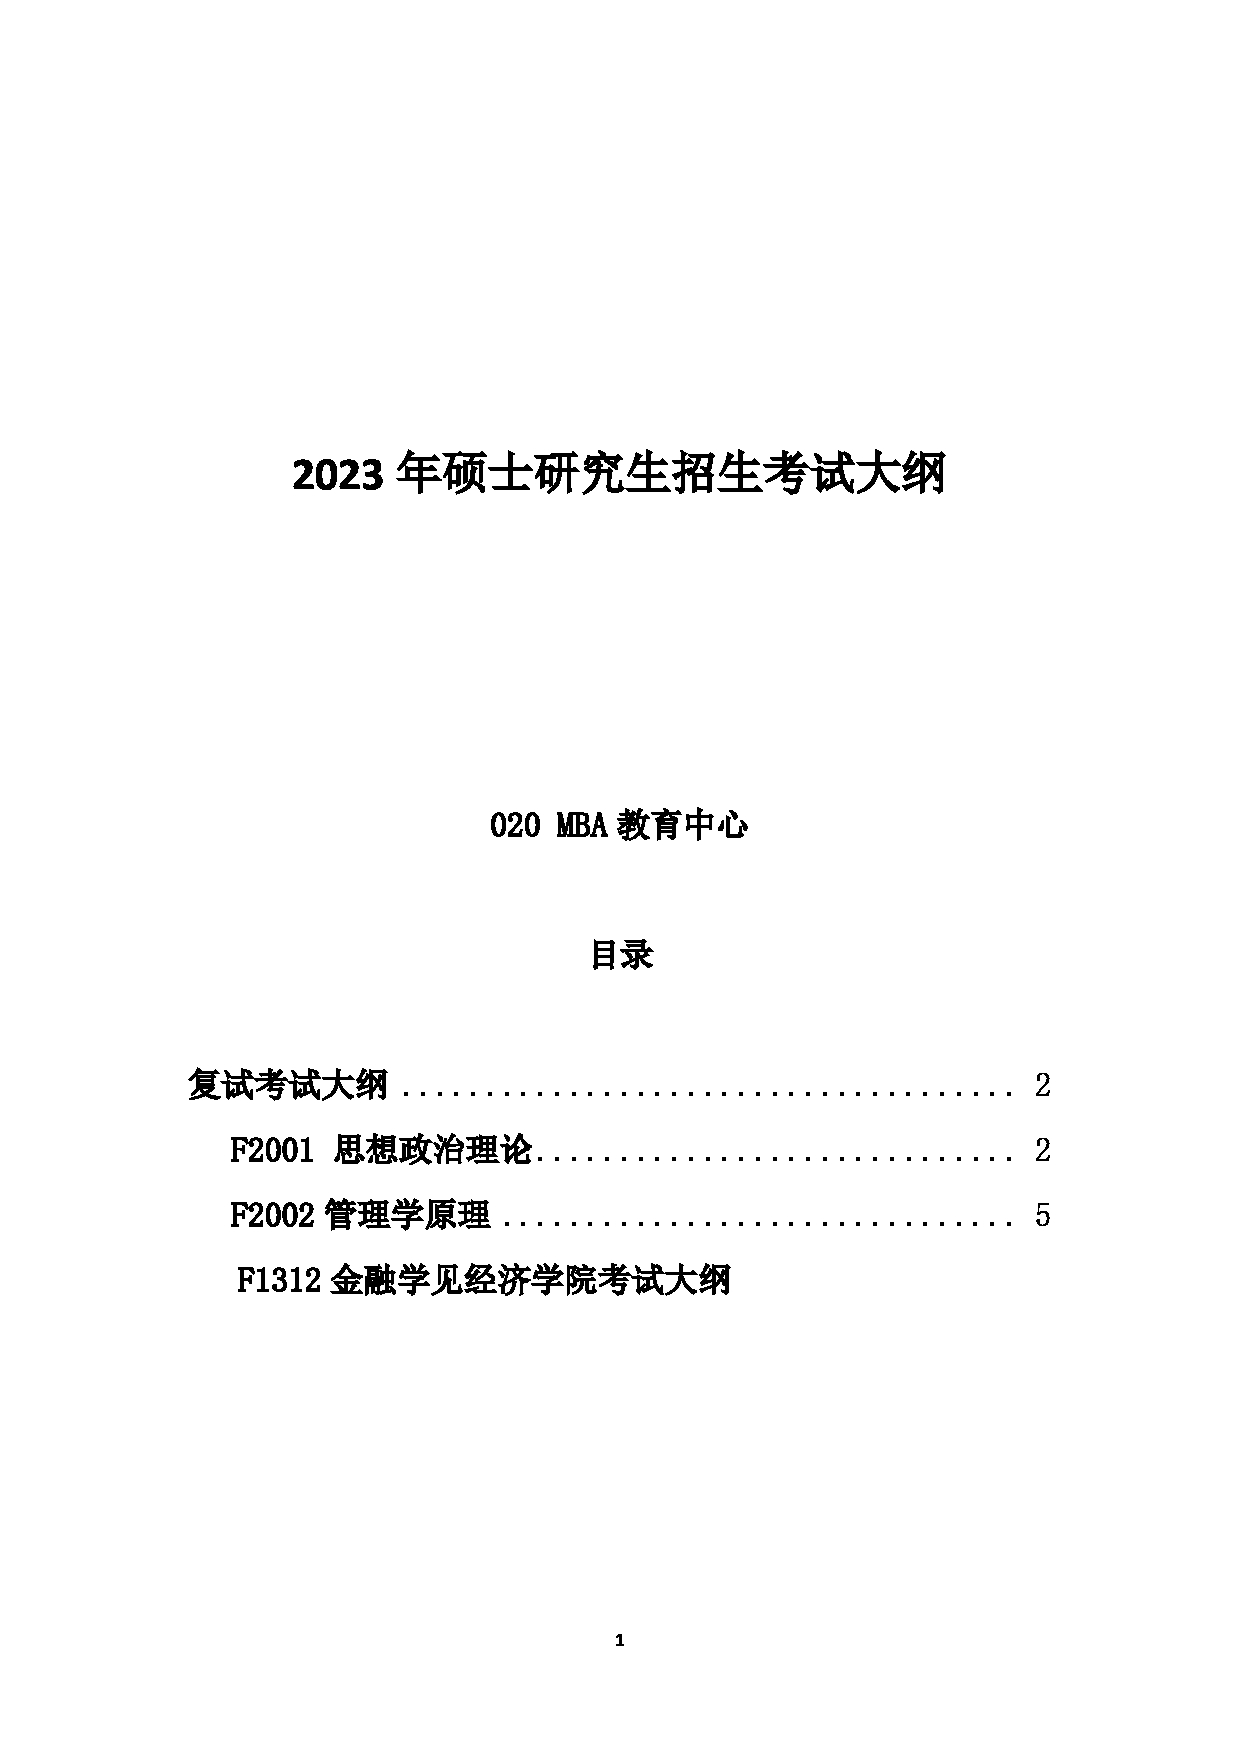 2023考研大纲：中国海洋大学2023年考研 020MBA教育中心 考试大纲第1页